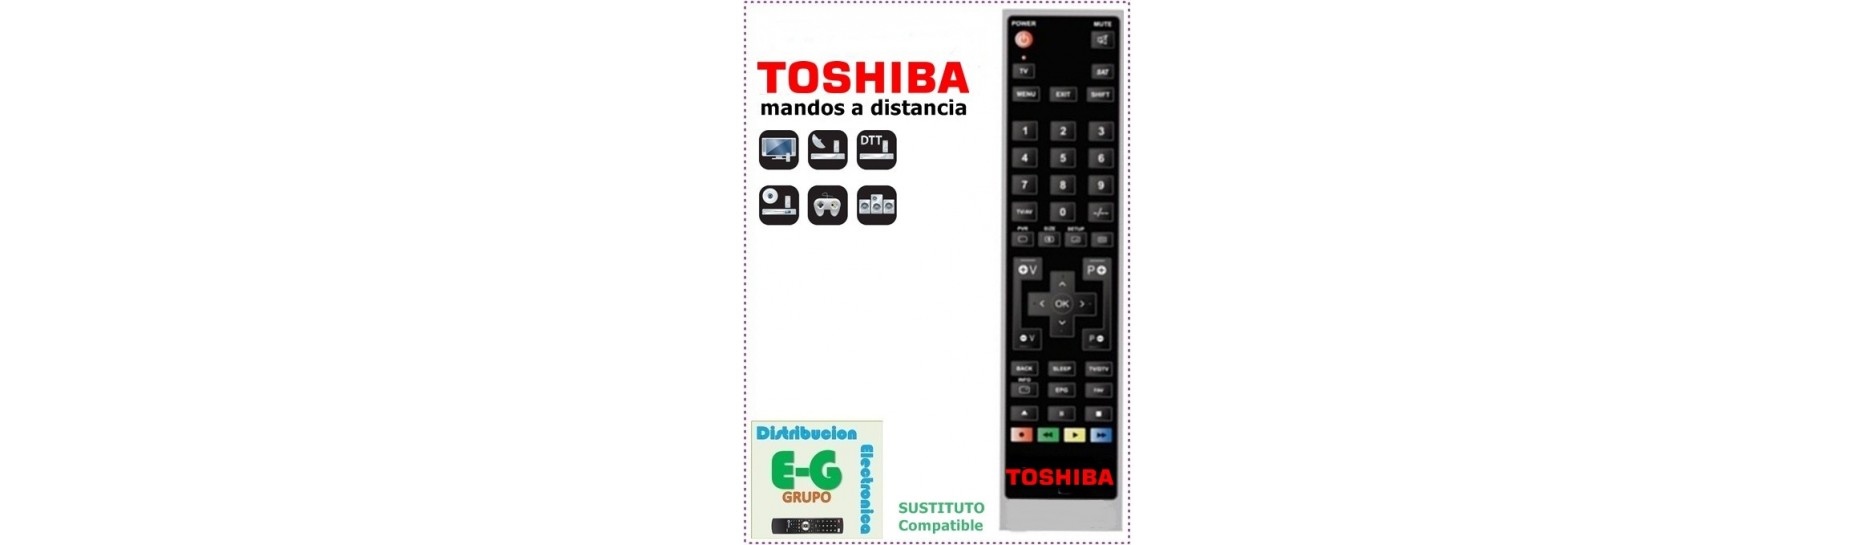 Mando para Televisión TOSHIBA | Comprar Mando para Televisión TOSHIBA